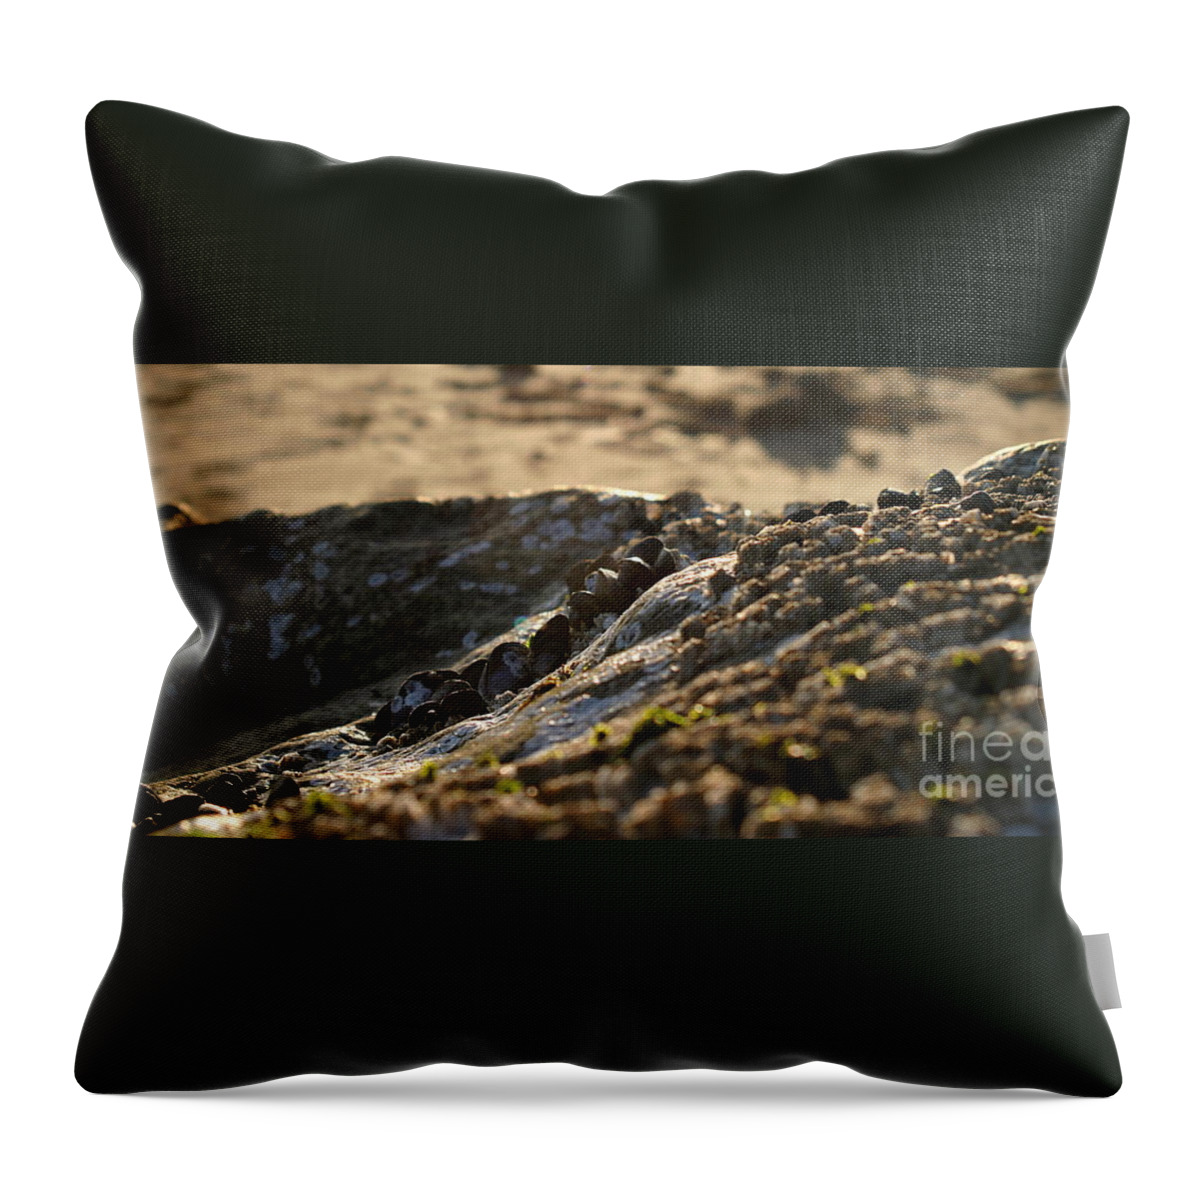 Ventura Throw Pillow featuring the photograph Mussels Sunset by Henrik Lehnerer